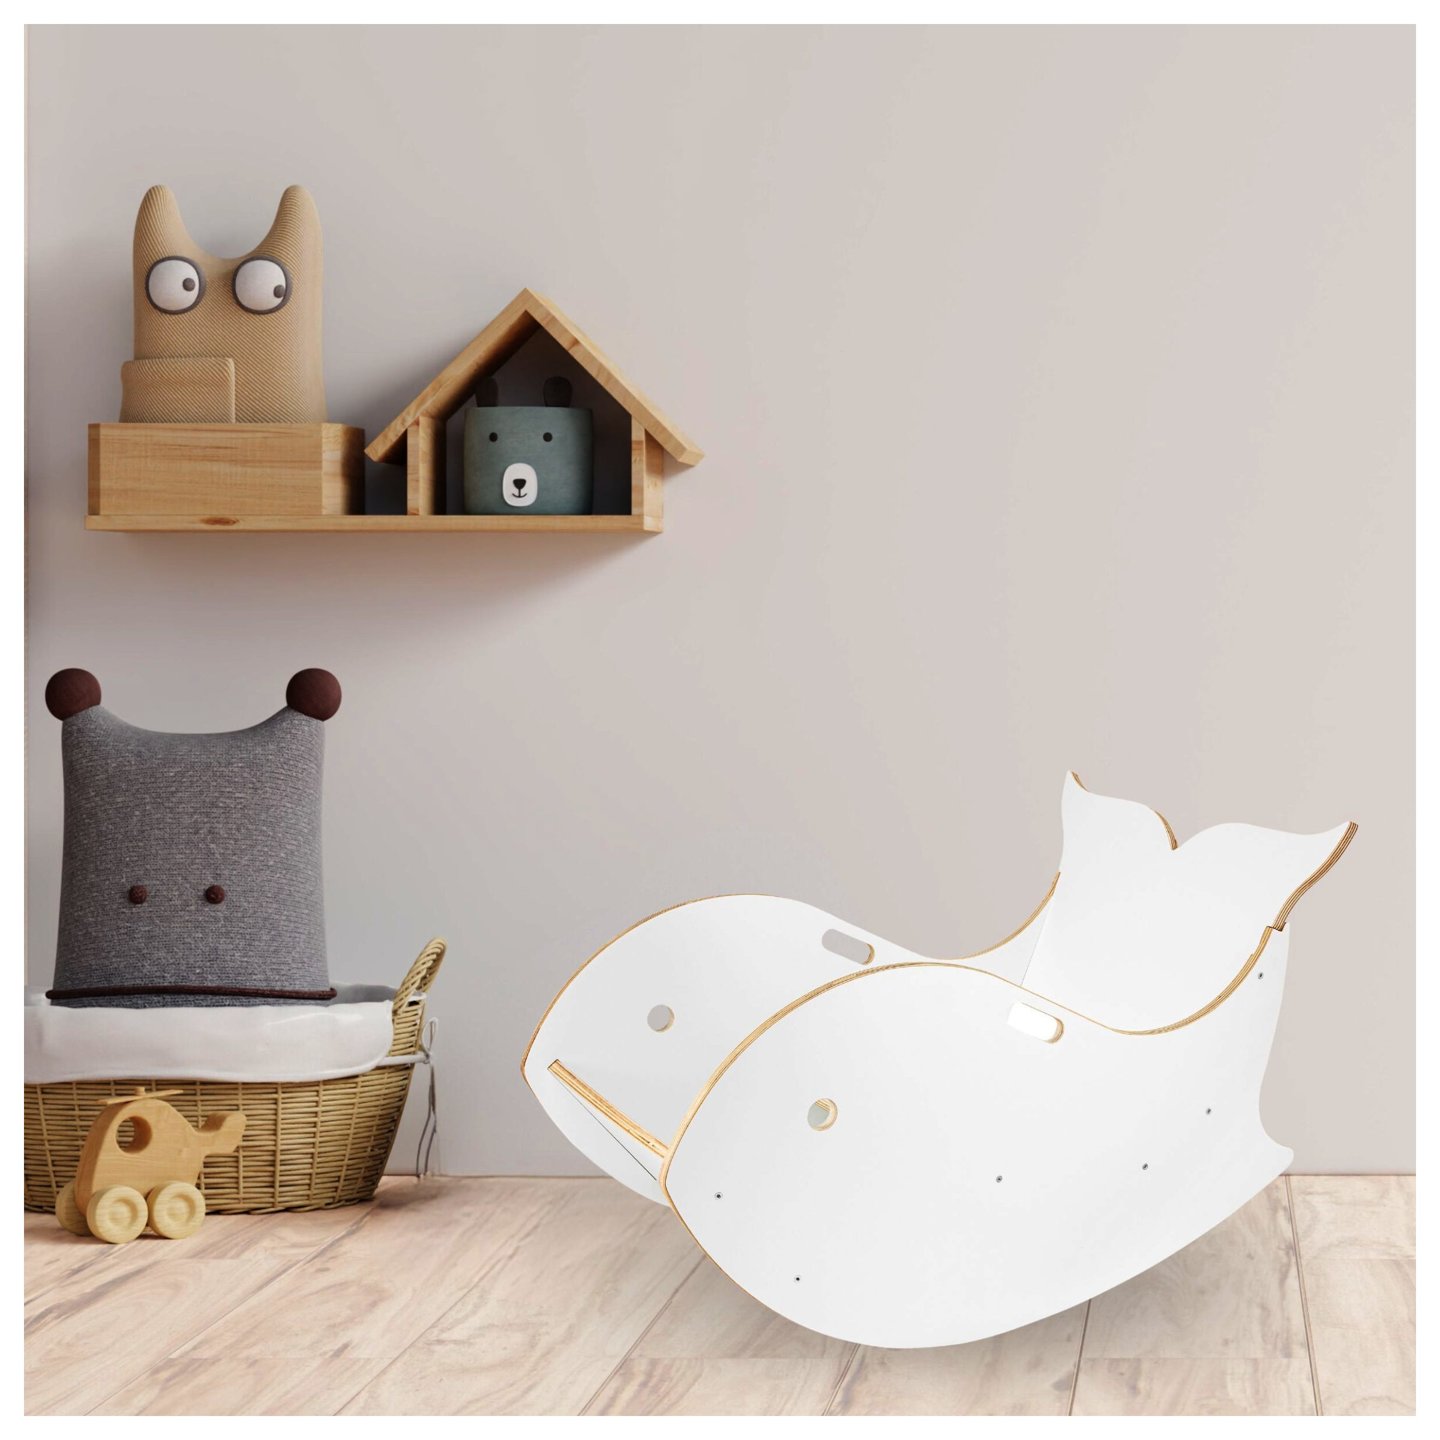 Drewniany bujak dla dzieci w kształcie wieloryba